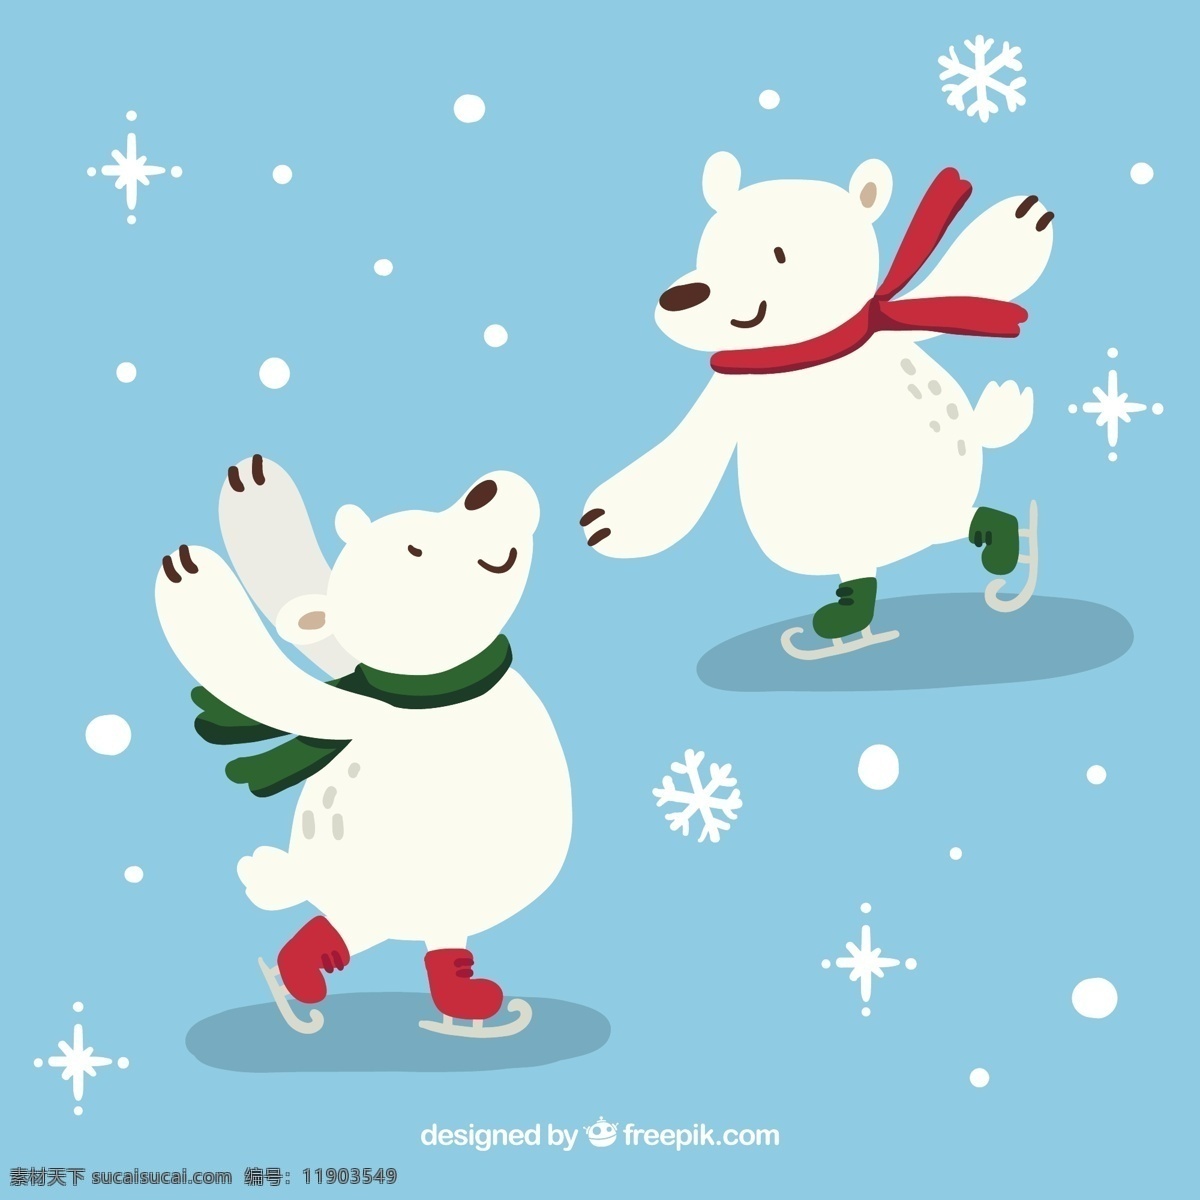 北极熊滑冰 绿色 卡通 冬季 红色 可爱 雪花 冰 跳舞 滑冰 季节 北极熊 熊 幼稚 极性 季节性 青色 天蓝色